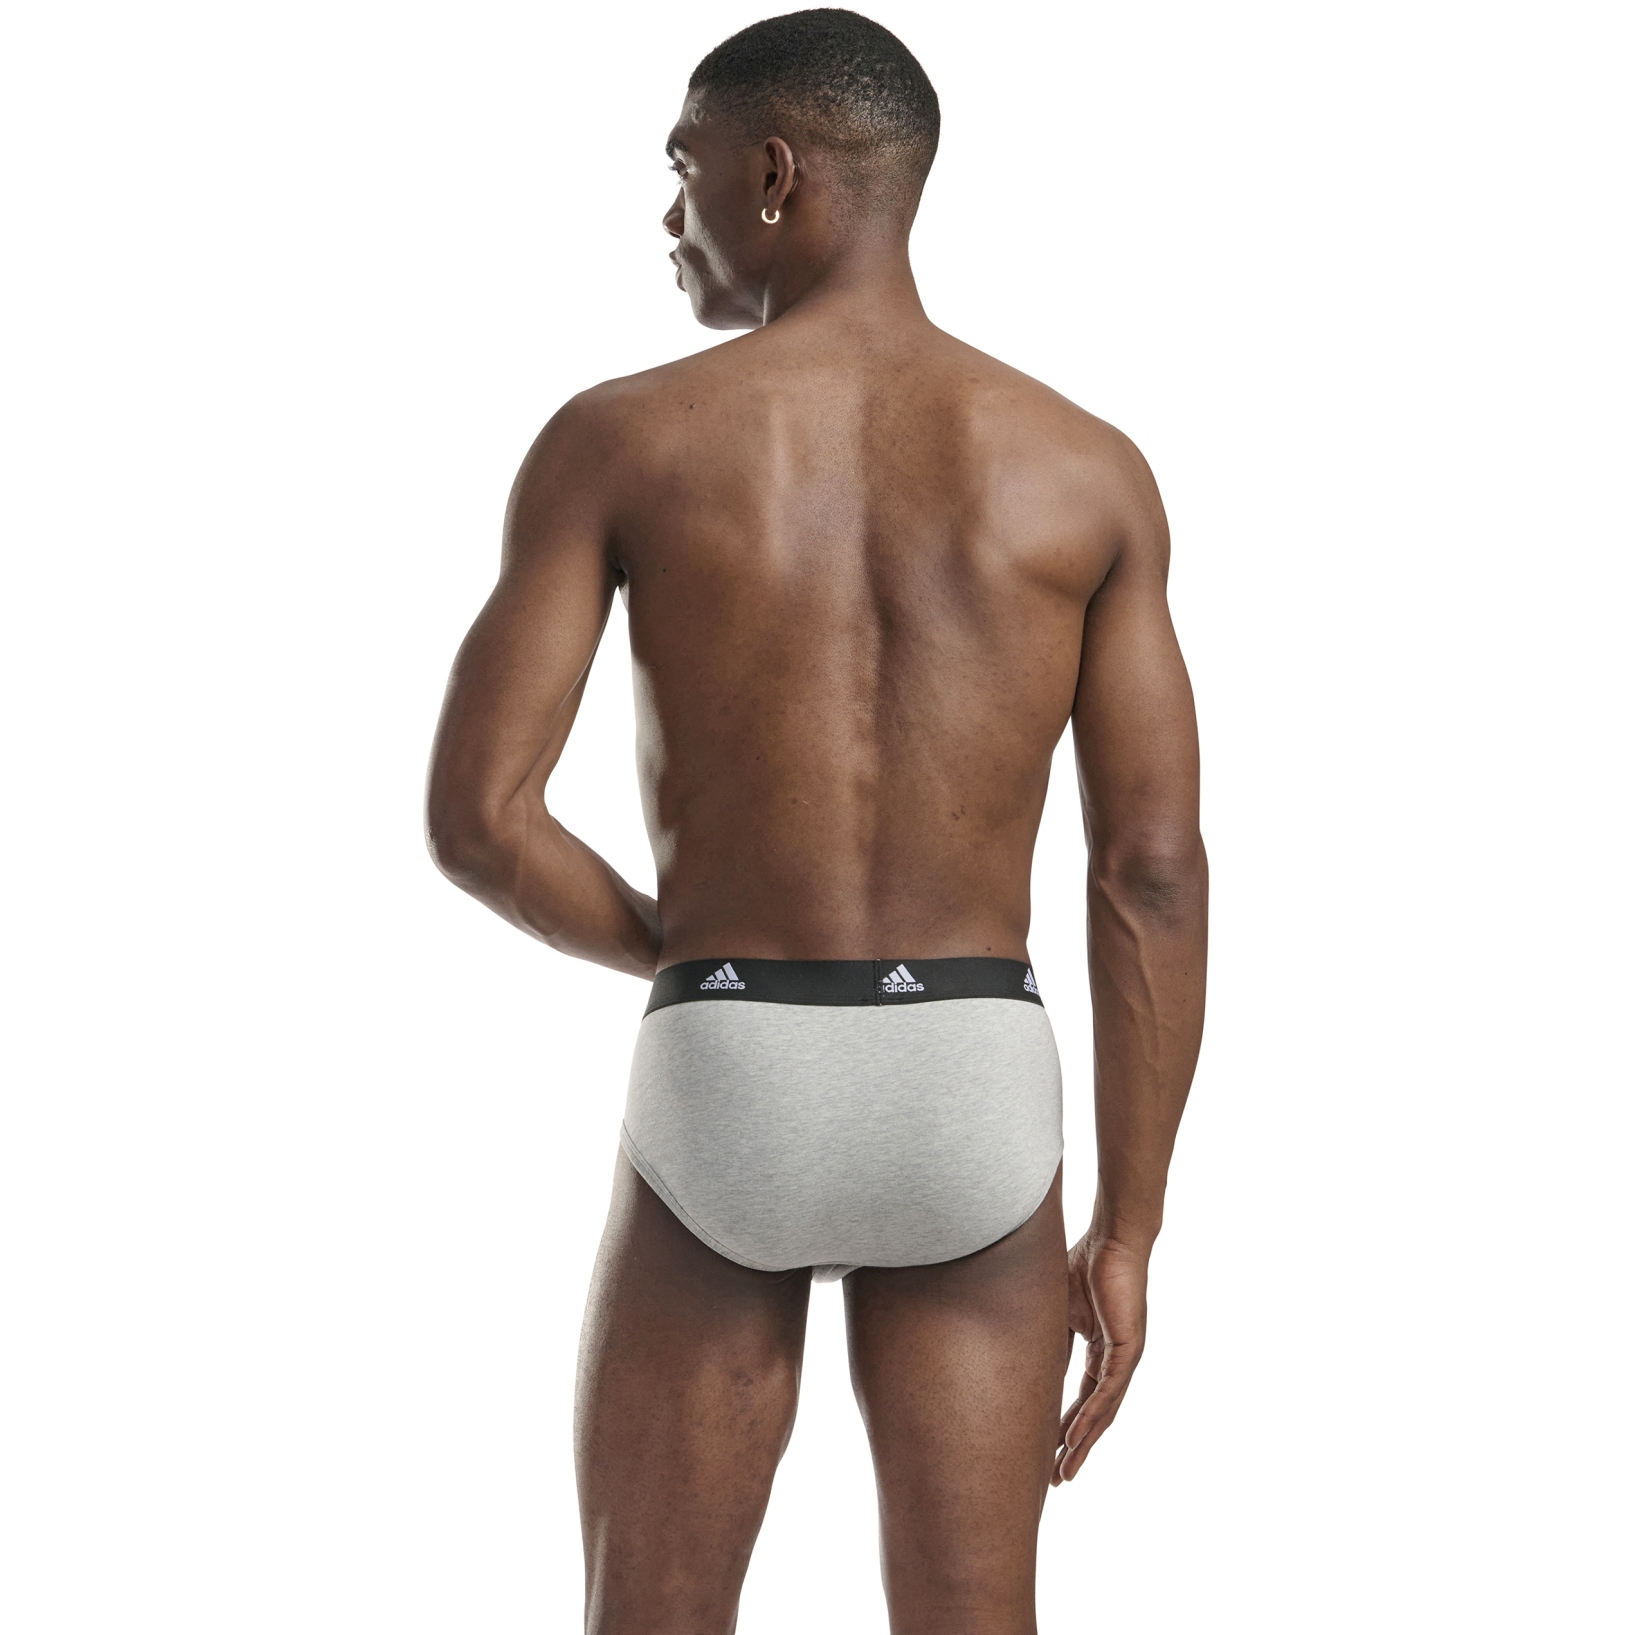 adidas Men's Stretch Cotton Boxer Briefs Underwear (3-Pack)